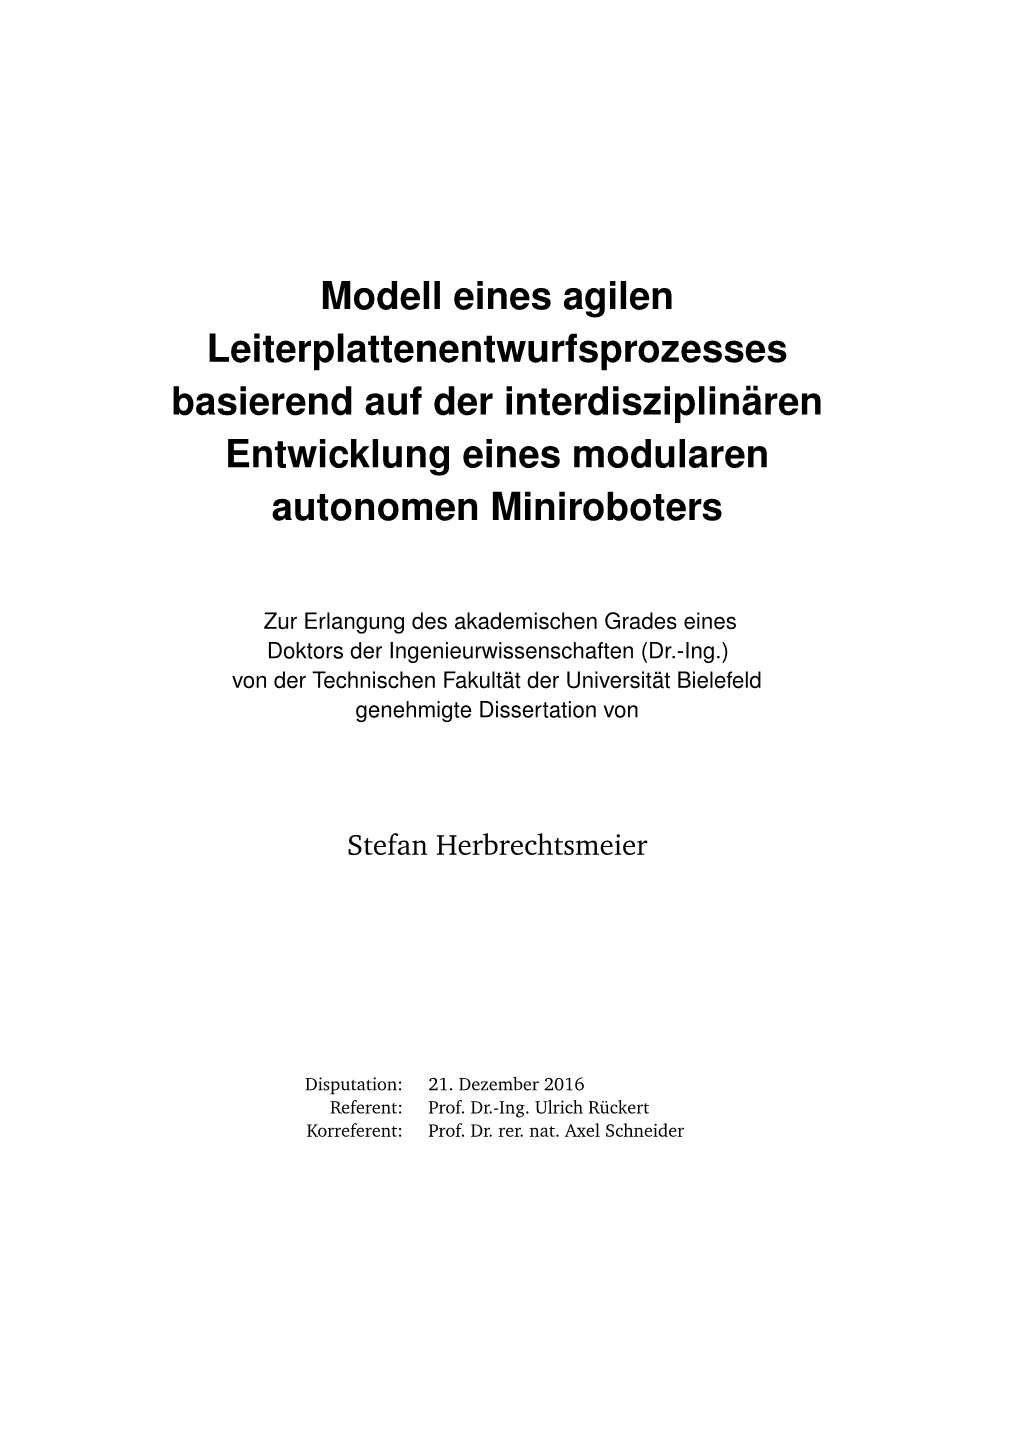 Modell Eines Agilen Leiterplattenentwurfsprozesses Basierend Auf Der Interdisziplinären Entwicklung Eines Modularen Autonomen Miniroboters